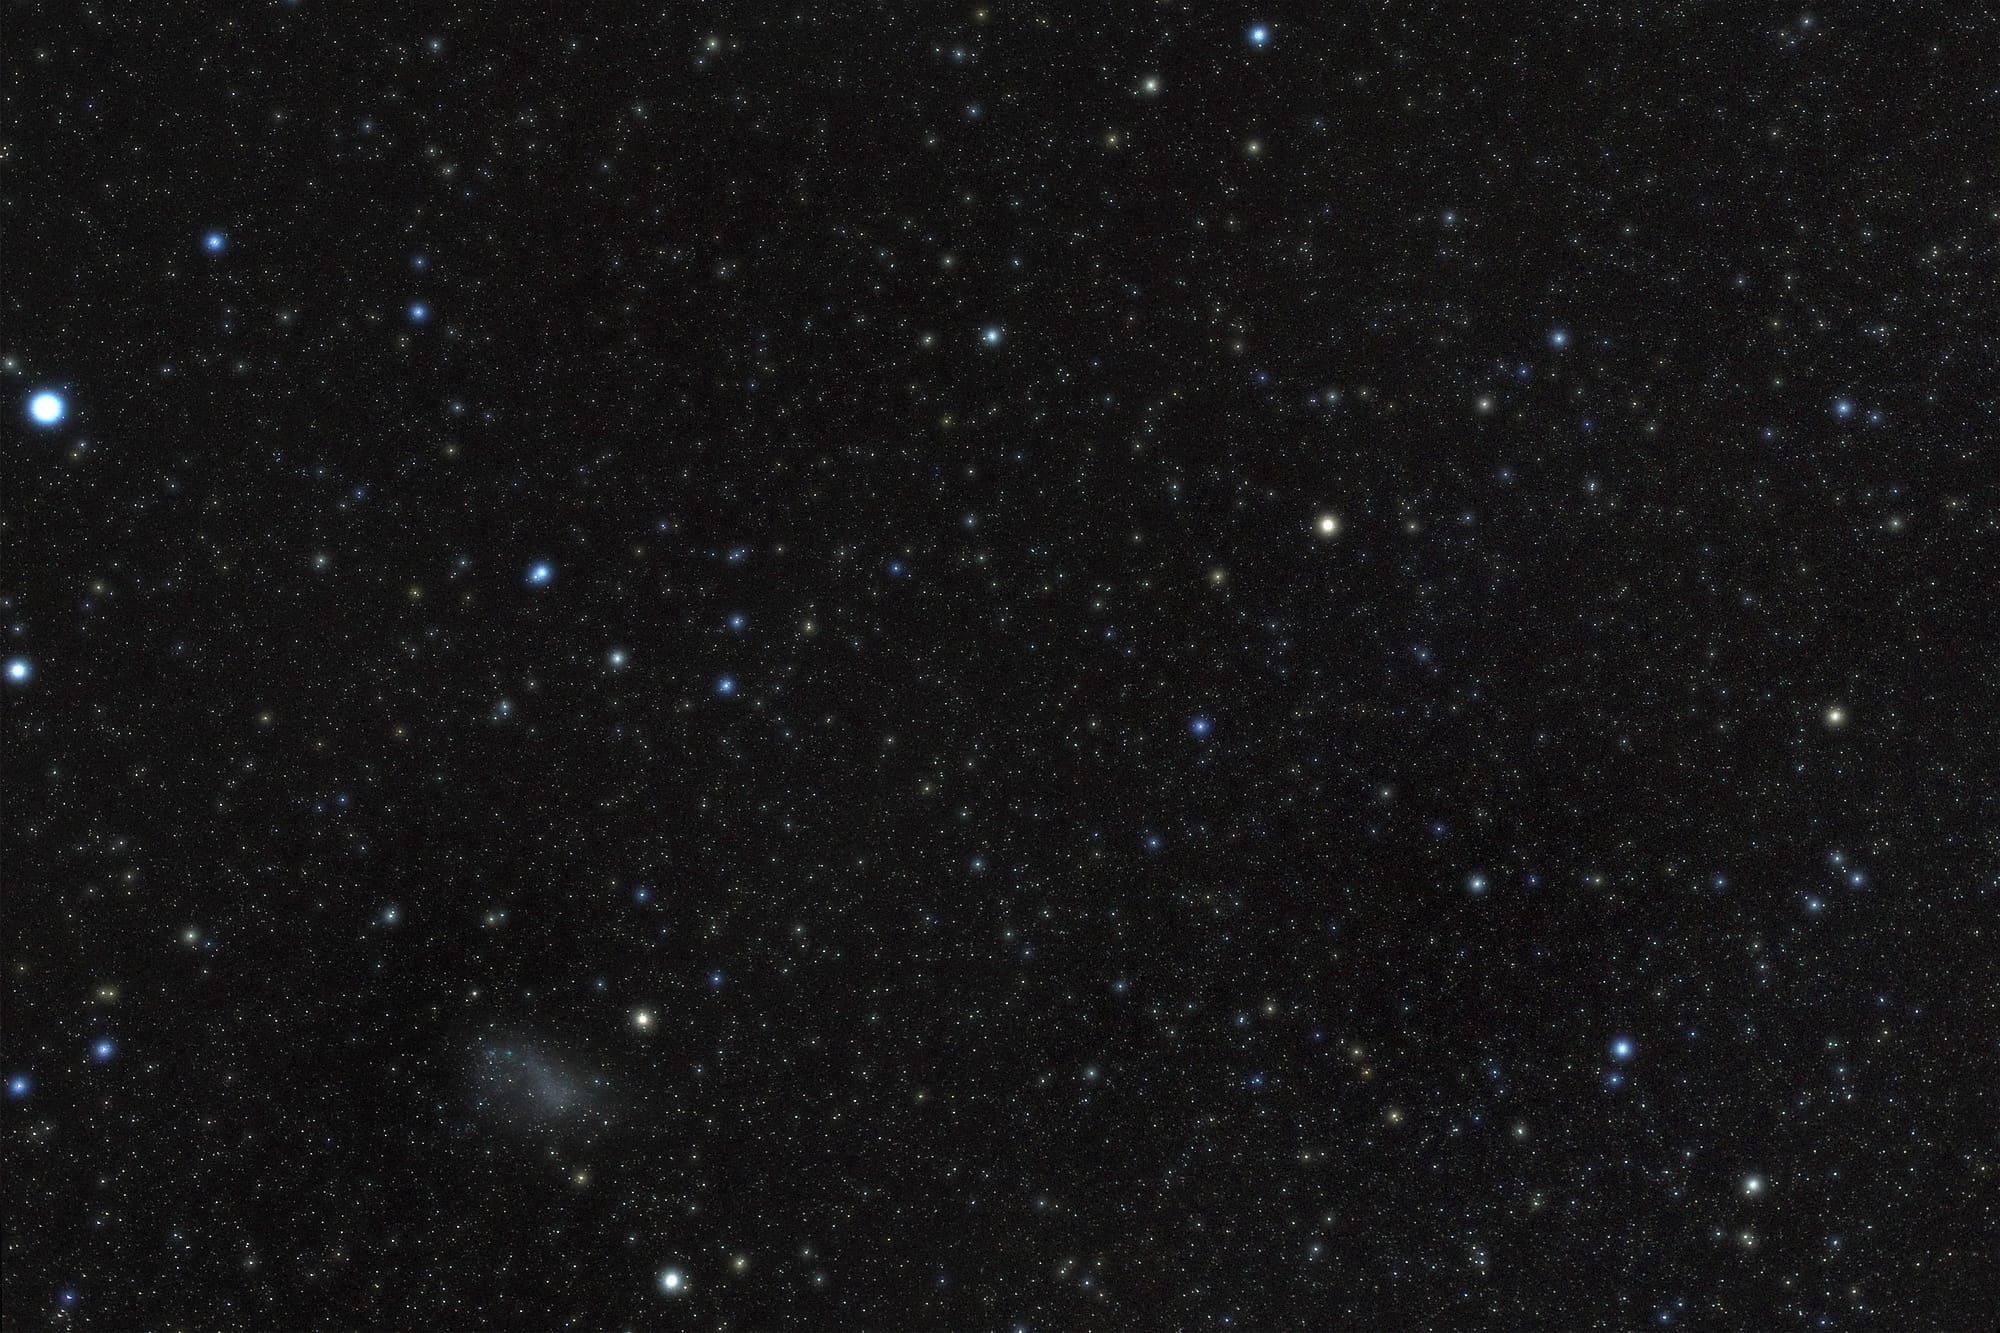 Das Sternbild Tukan enthält die Kleine Magellansche Wolke als besonderes Beobachtungsobjekt. Hellster Stern im Bild ist Achernar im benachbarten Sternbild Eridanus